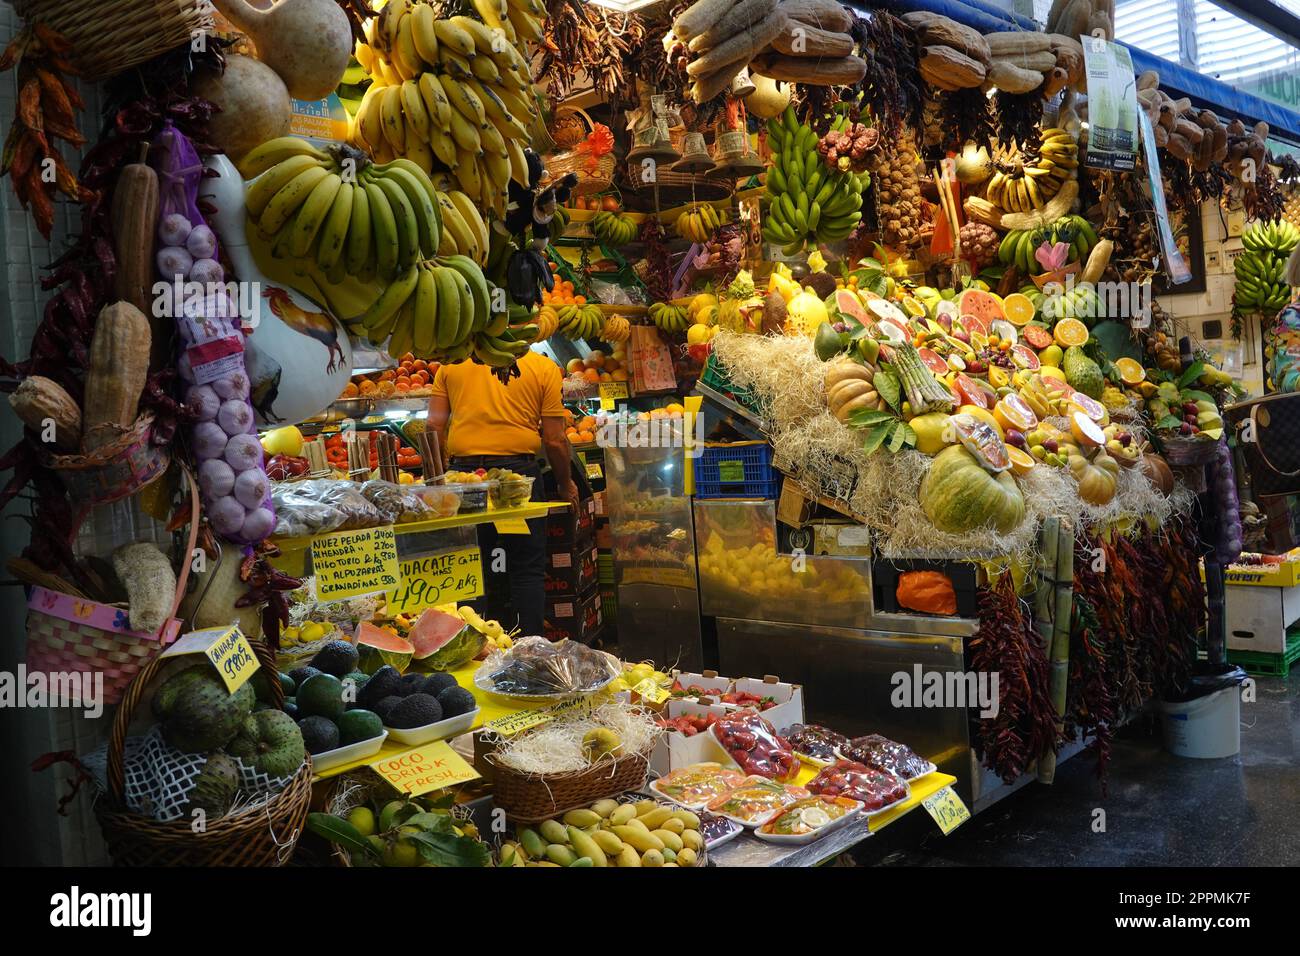 Ã¼berwÃ¤tigendes Obst- und GemÃ¼seangebot in der Markthalle Mercado de Vegueta Stock Photo